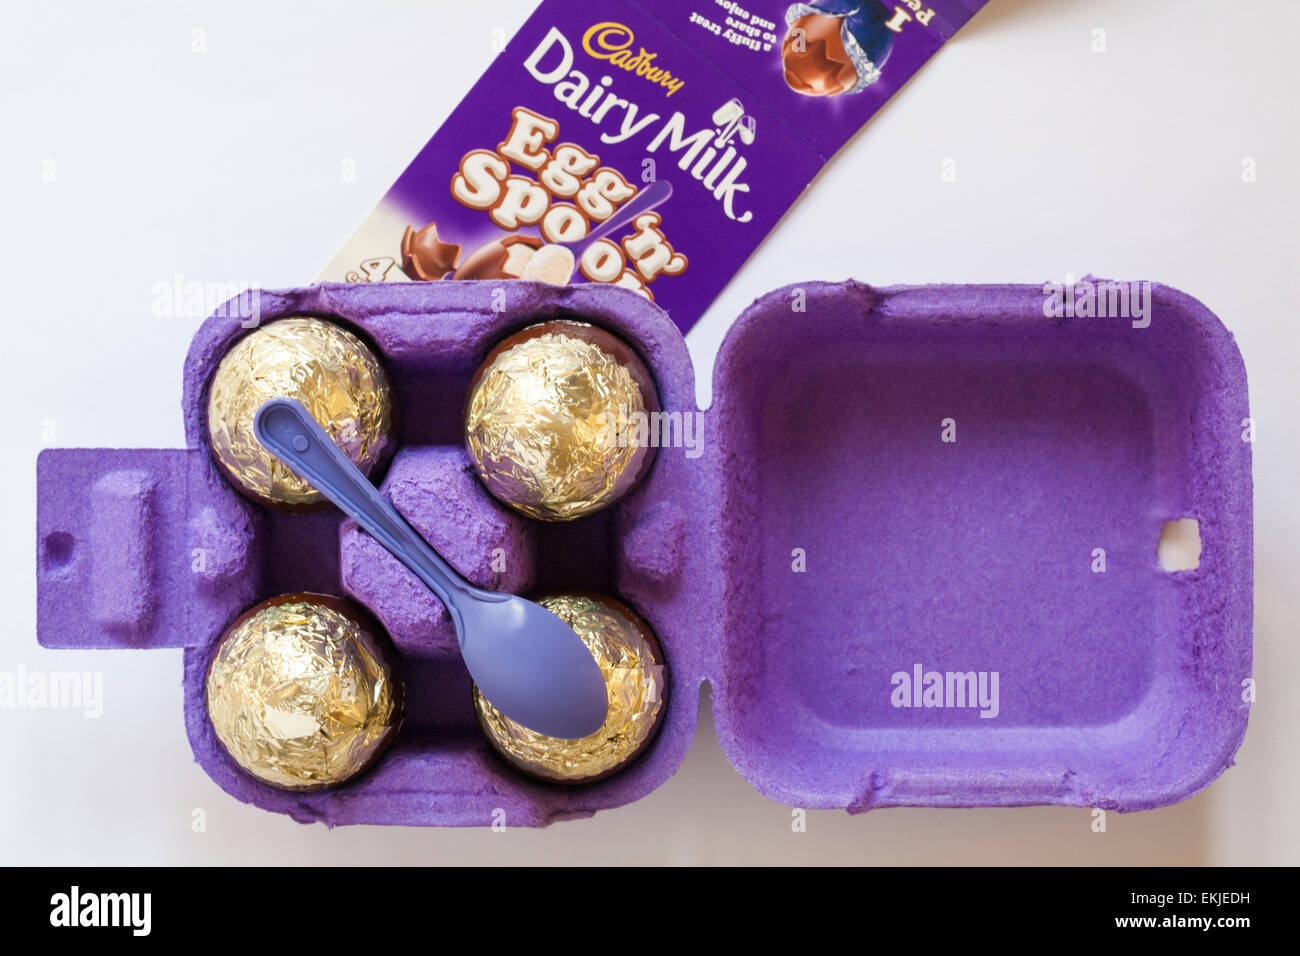 Scatola in cartone della Cadbury Dairy Milk uovo 'n' Spoon - choc-pieno di soffici deliziosa mousse lattiginoso aperto per mostrare i contenuti pronti per la Pasqua Foto Stock